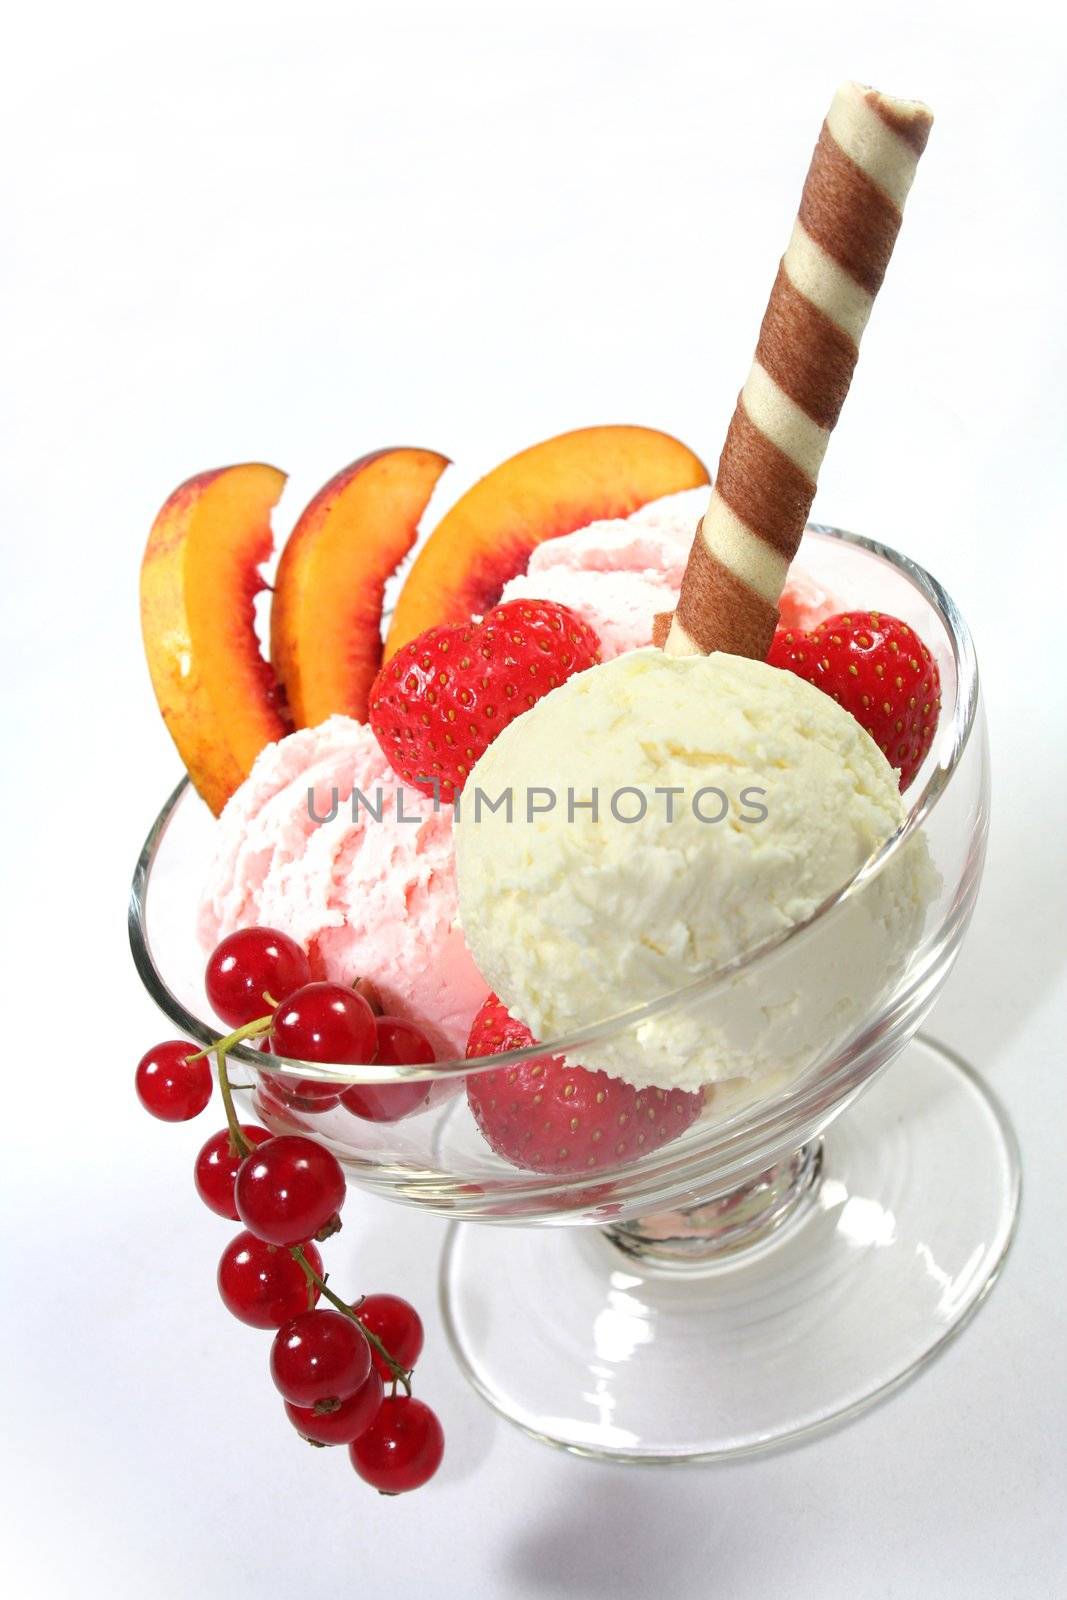 Ice cream with vanilla and strawberry ice cream